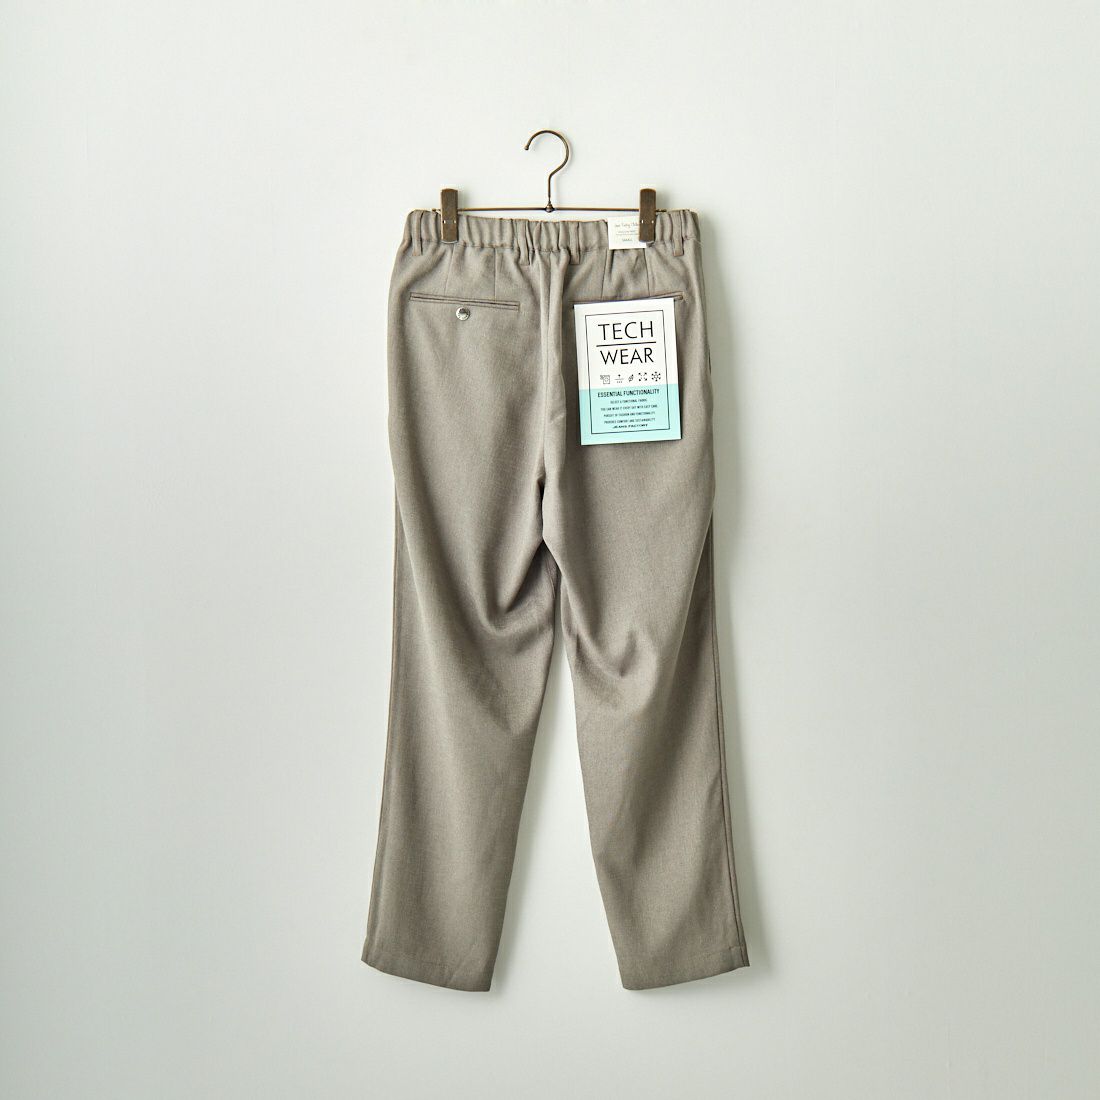 Jeans Factory Clothes [ジーンズファクトリークローズ] リスタビュール2Pワイドテーパードパンツ [JFC-232-014] BEIGE